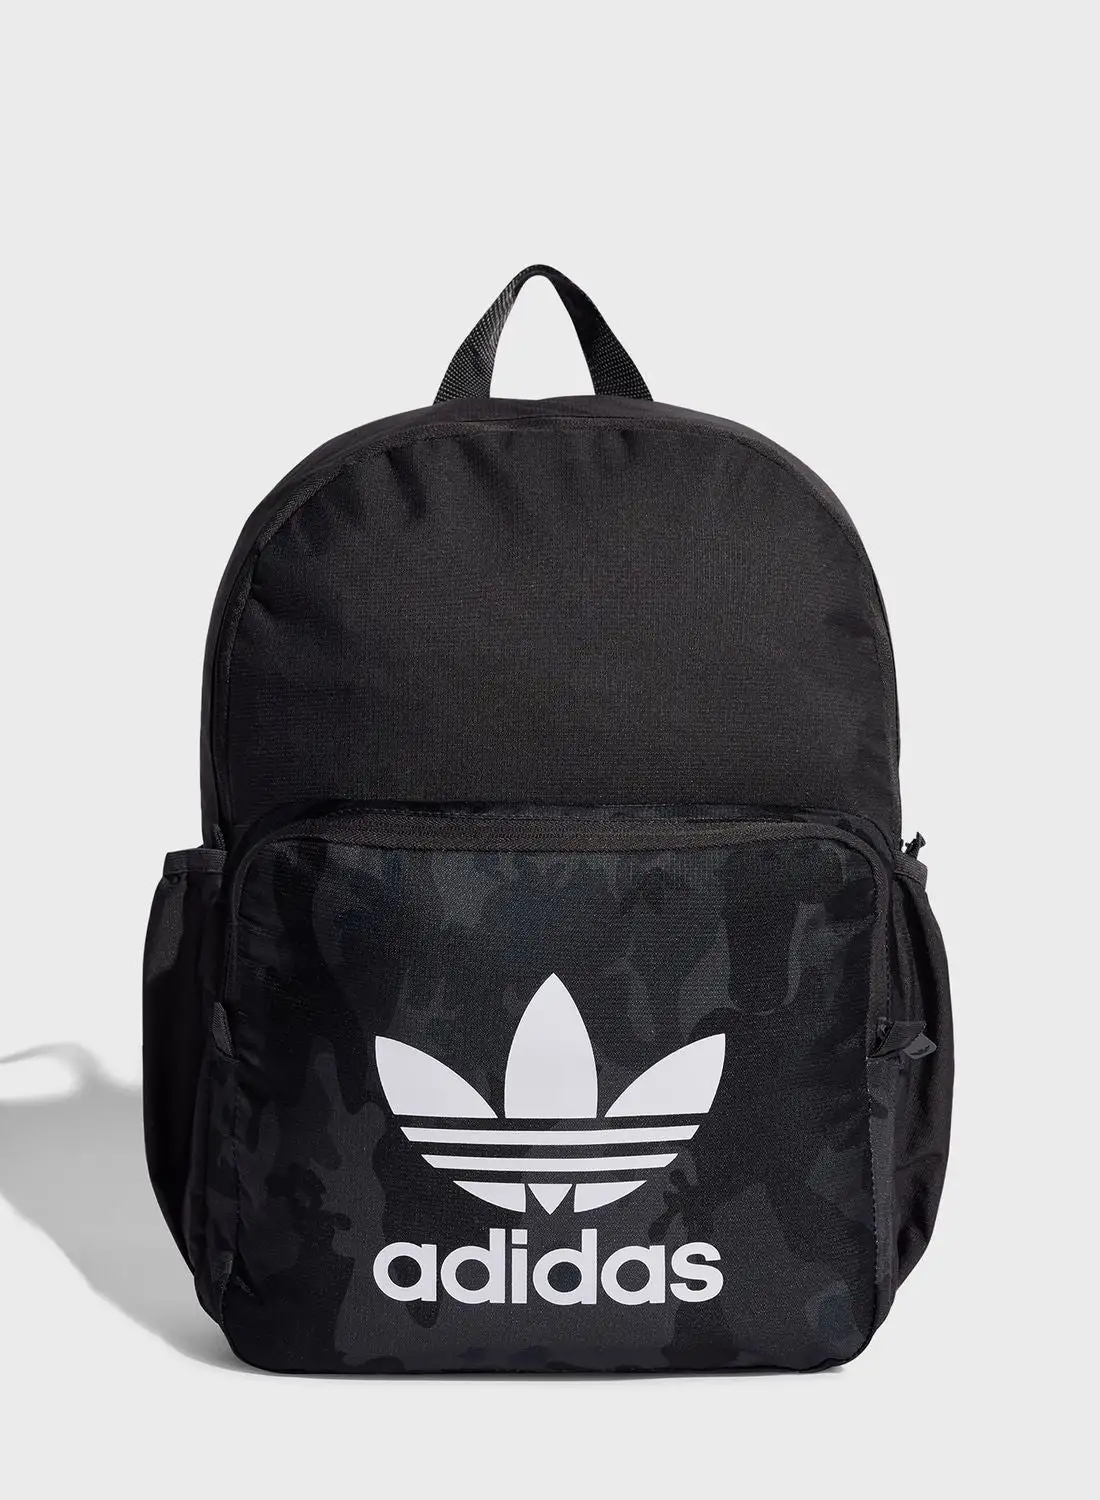 adidas Originals Camo Backpack